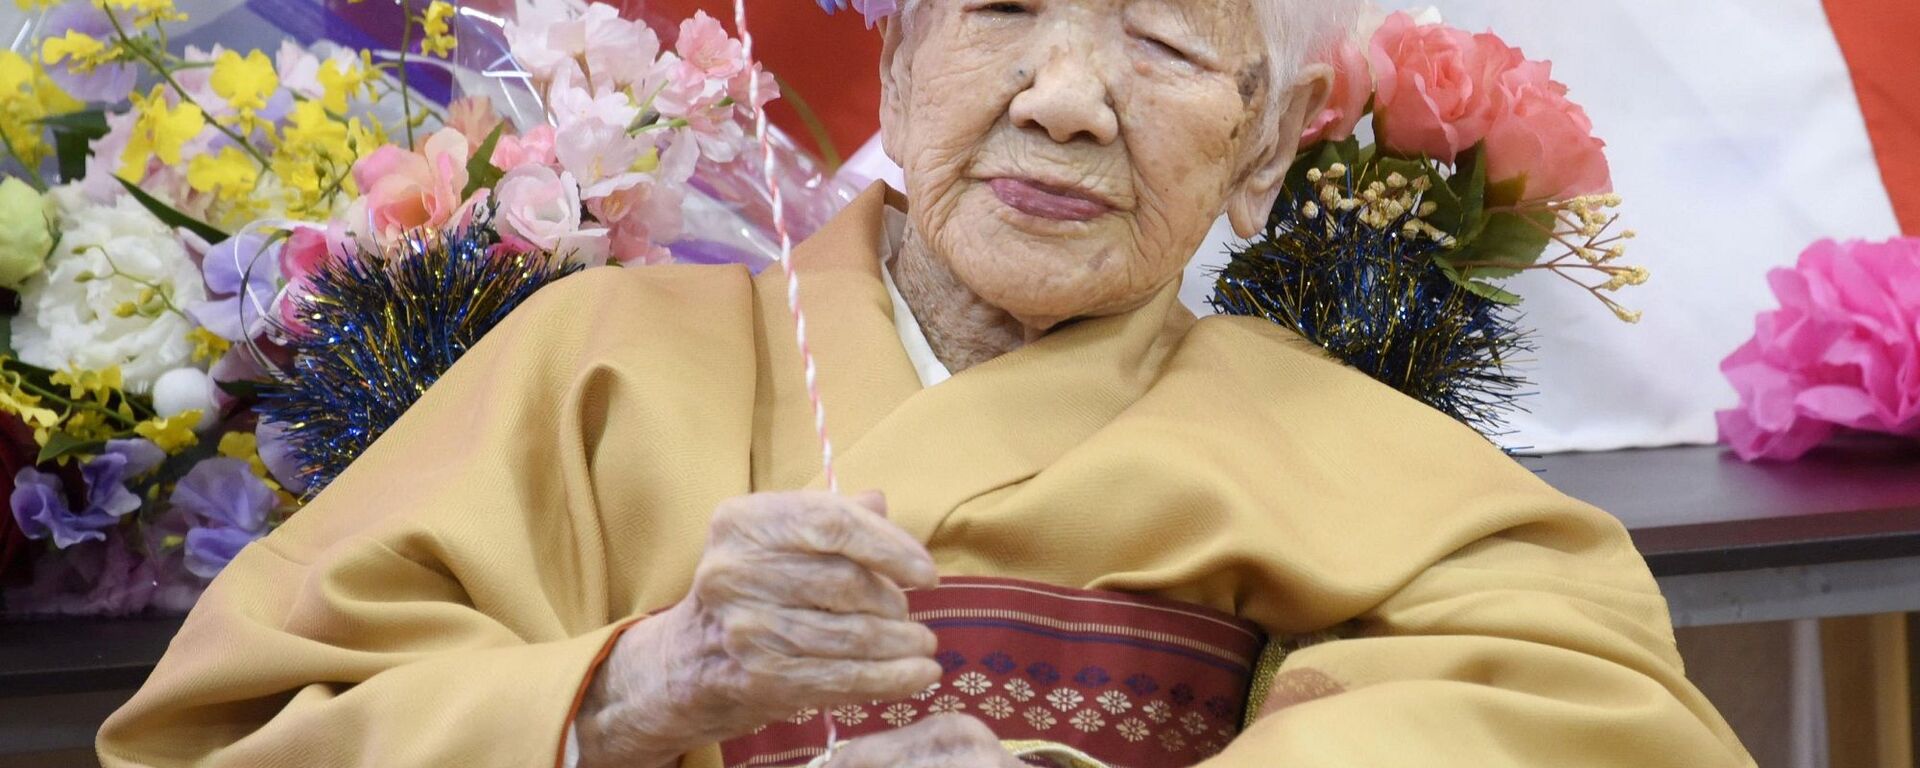 Japonya'da yaşayan Kane Tanaka, 117. doğum gününü kutlayarak sahip olduğu 'dünyanın en yaşlı insanı' rekorunu yeniledi. - Sputnik Türkiye, 1920, 15.09.2021